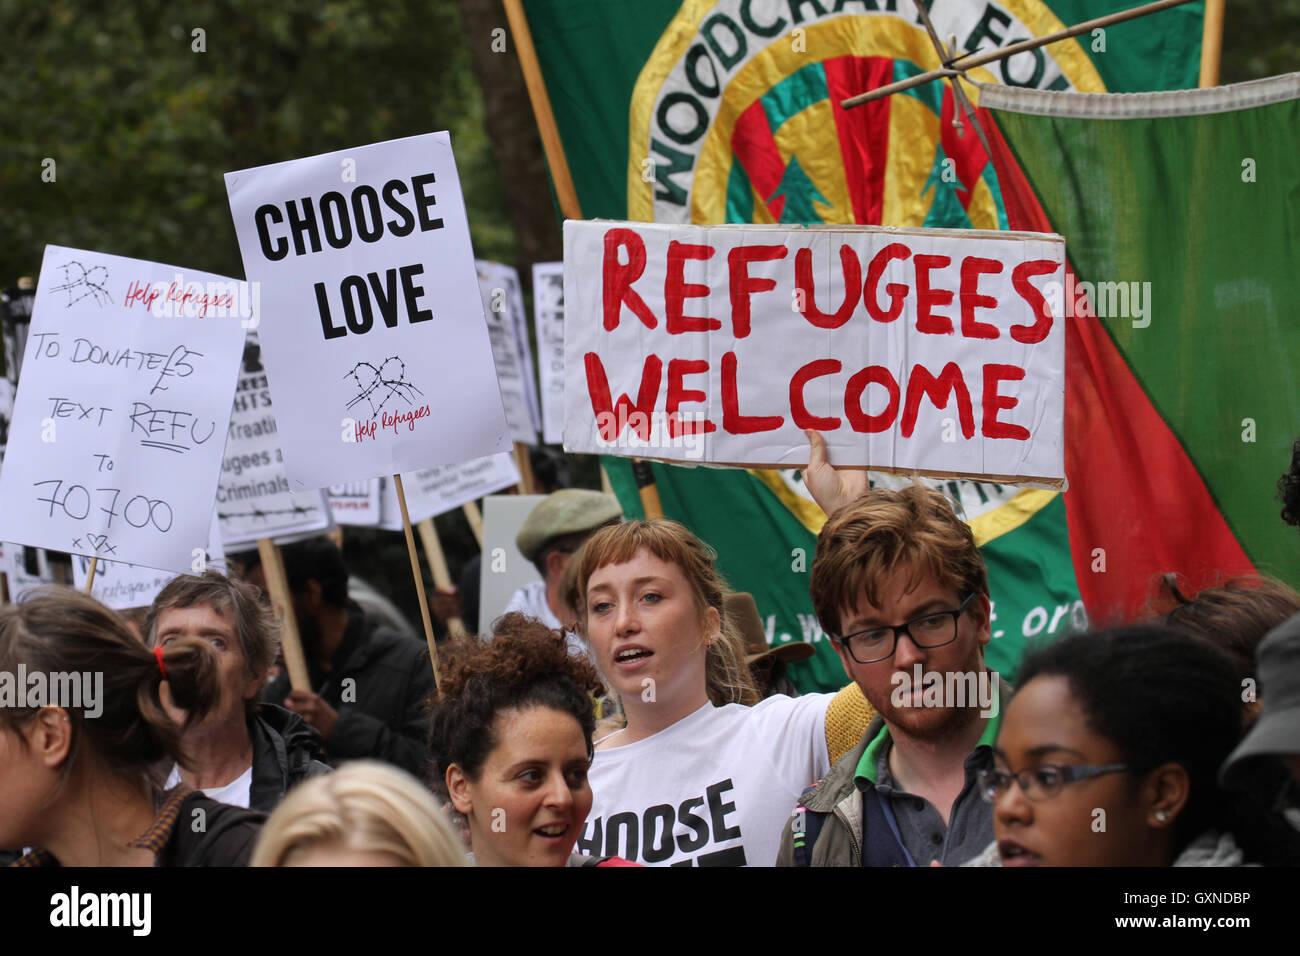 LONDON, UK - 17.September: Tausende von Menschen Marsch durch London zur Solidarität mit Flüchtlingen am 1. 7. September 2016. Der Marsch vom Hyde Park, Parliament Square folgt Berichte über die vielen Menschen verloren ihr Leben, darunter einen kleiner Junge Aylan Kurdi aus ihren Krieg zerrissenen Ländern für die Sicherheit in Europa zu fliehen versucht. Letztes Jahr stimmte die Regierung, 20.000 syrische Flüchtlinge neu anzusiedeln. Bildnachweis: David Mbiyu/Alamy Live-Nachrichten Stockfoto